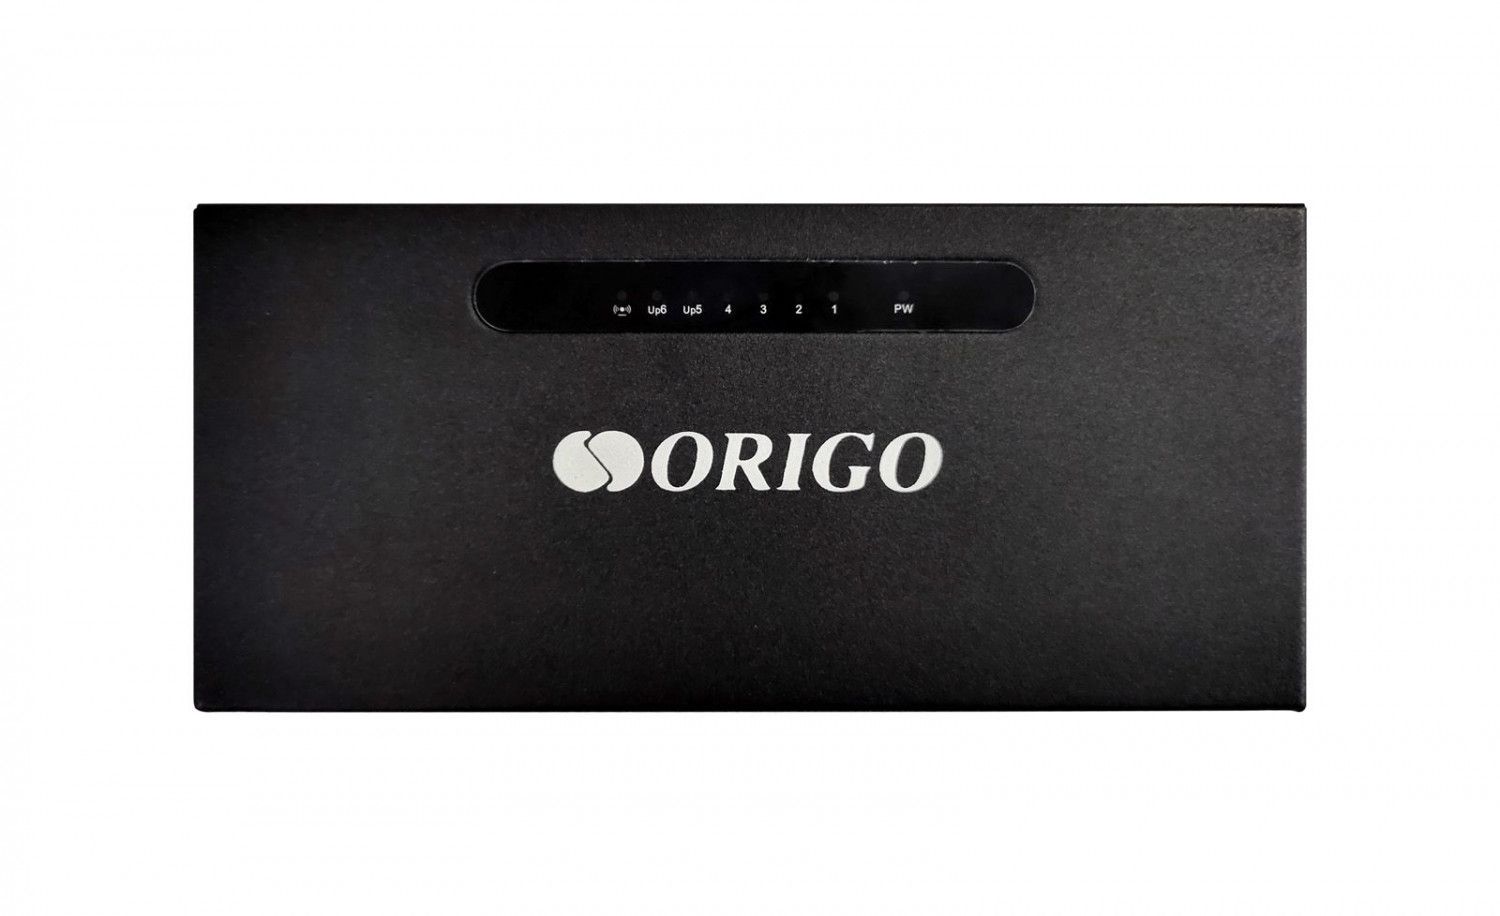 Origo OS1206P/60W неуправляемый PoE-коммутатор 4x100Base-TX PoE+, 2x100Base-TX, PoE-бюджет 60 Вт